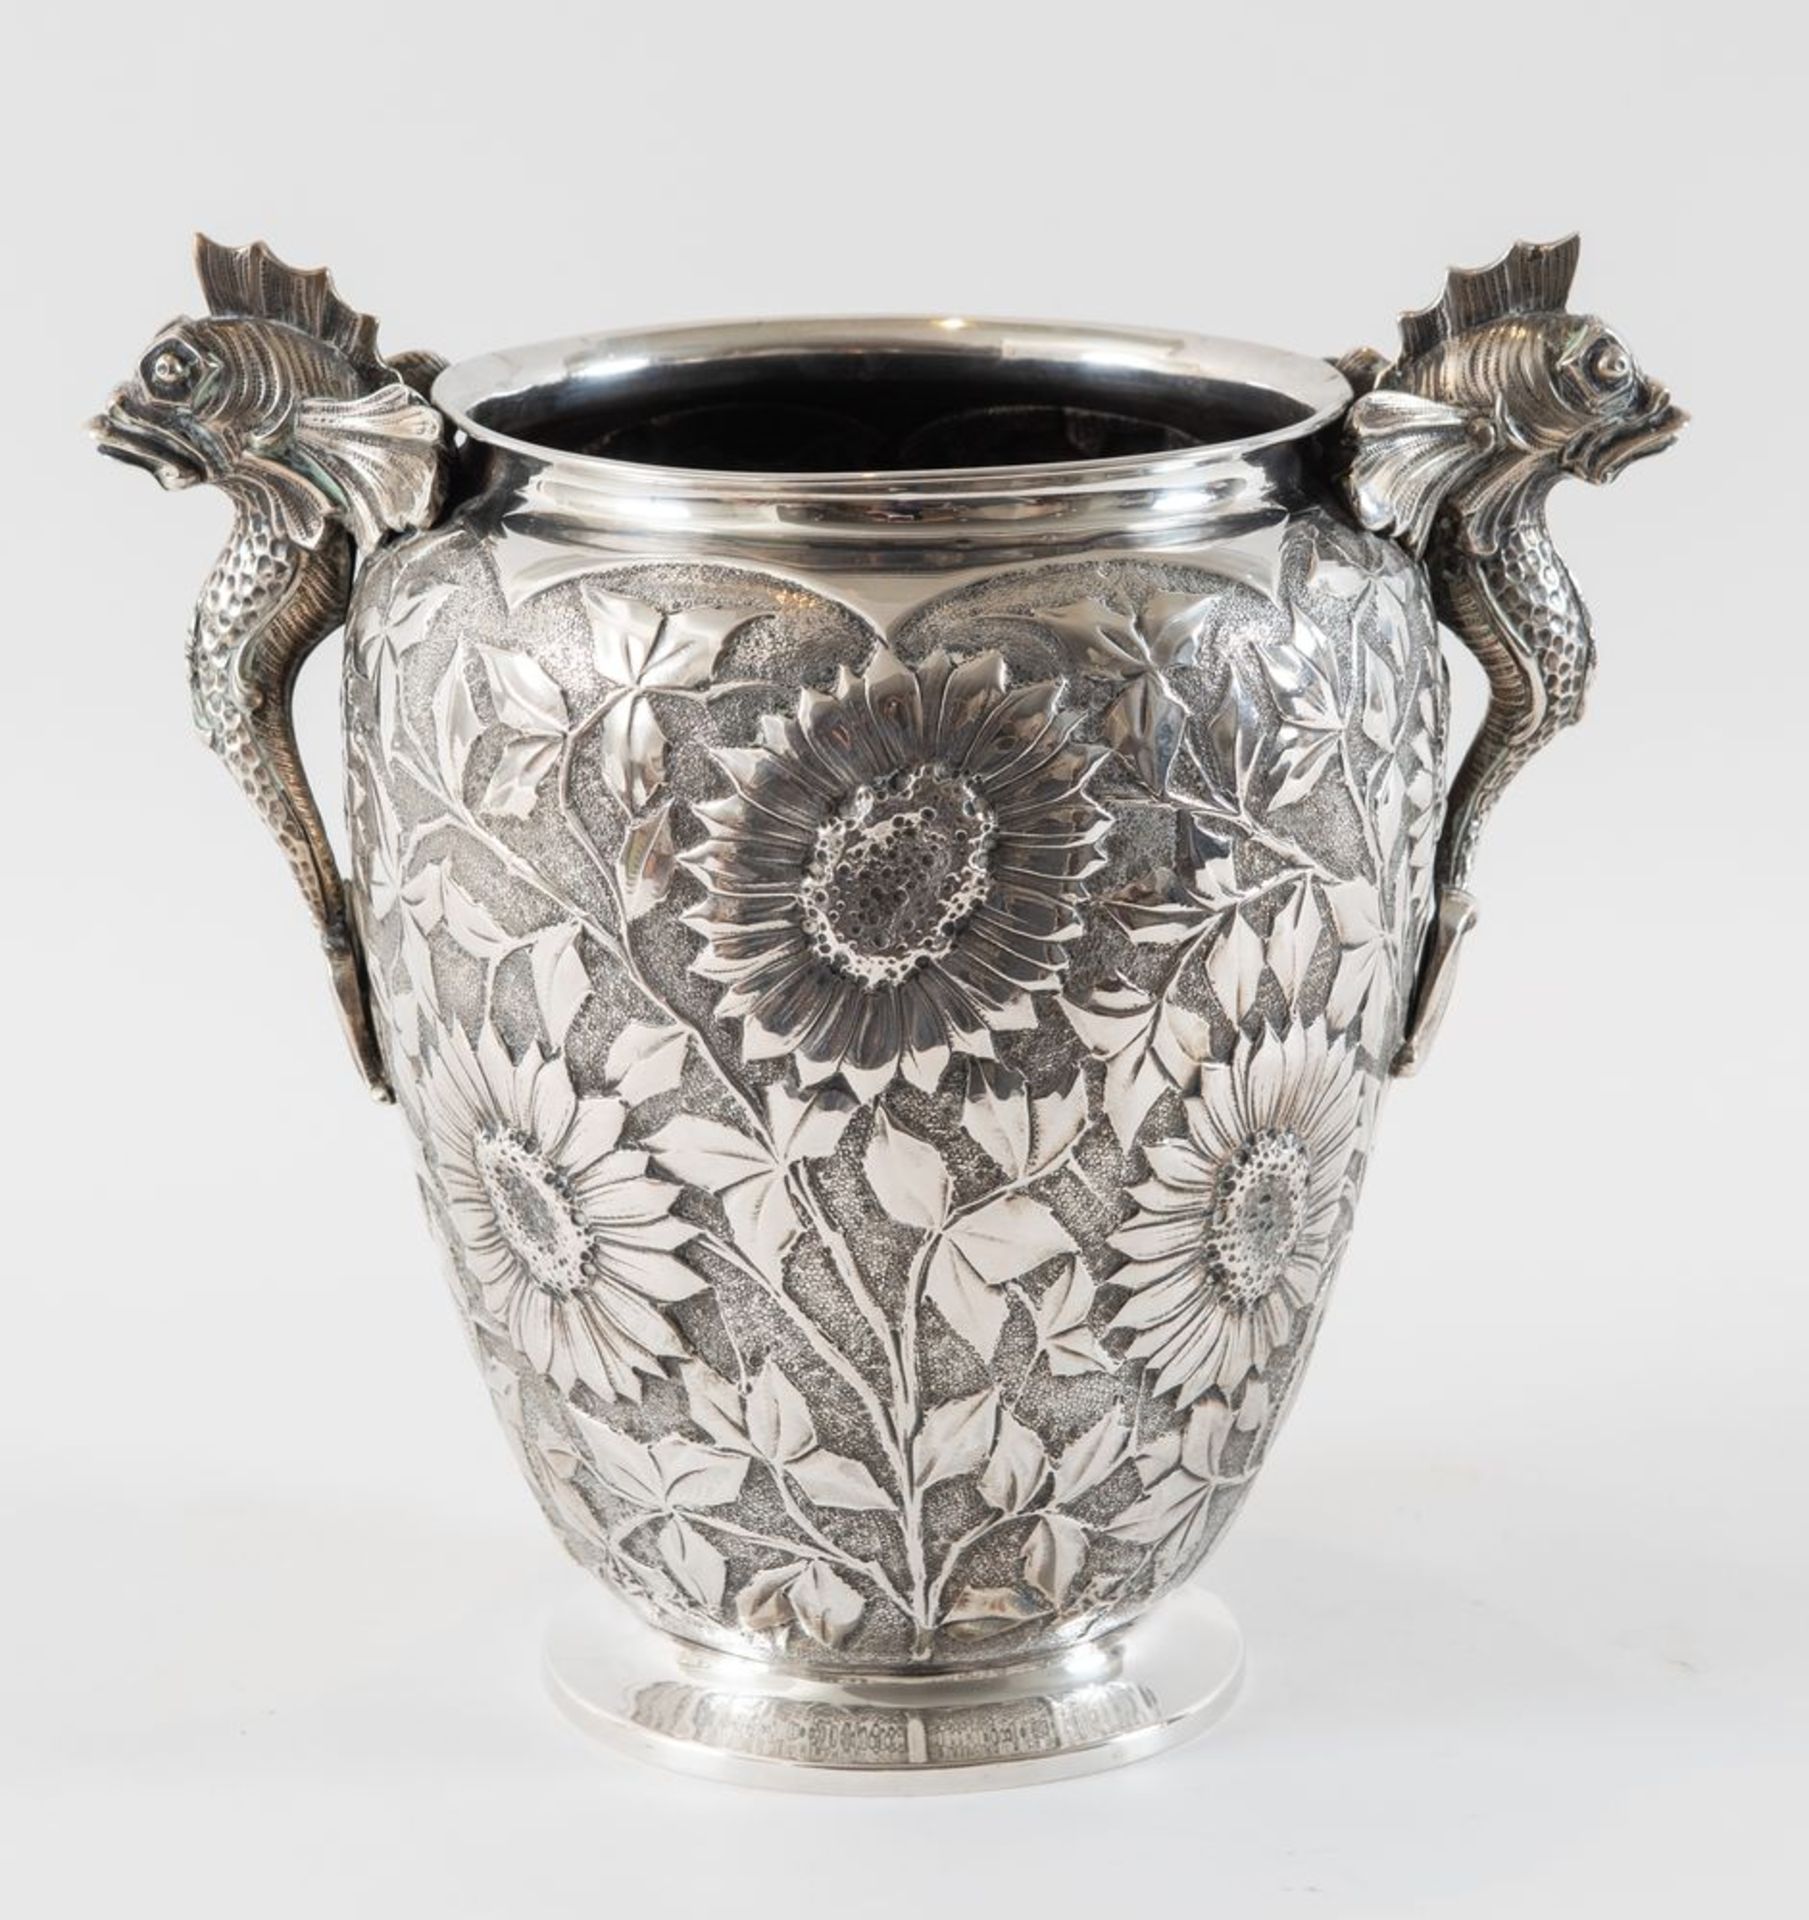 Vaso in argento 800 con prese a guisa di tritone. Sotto la base reca punzoni: 800, 800 e probabile s - Bild 2 aus 4